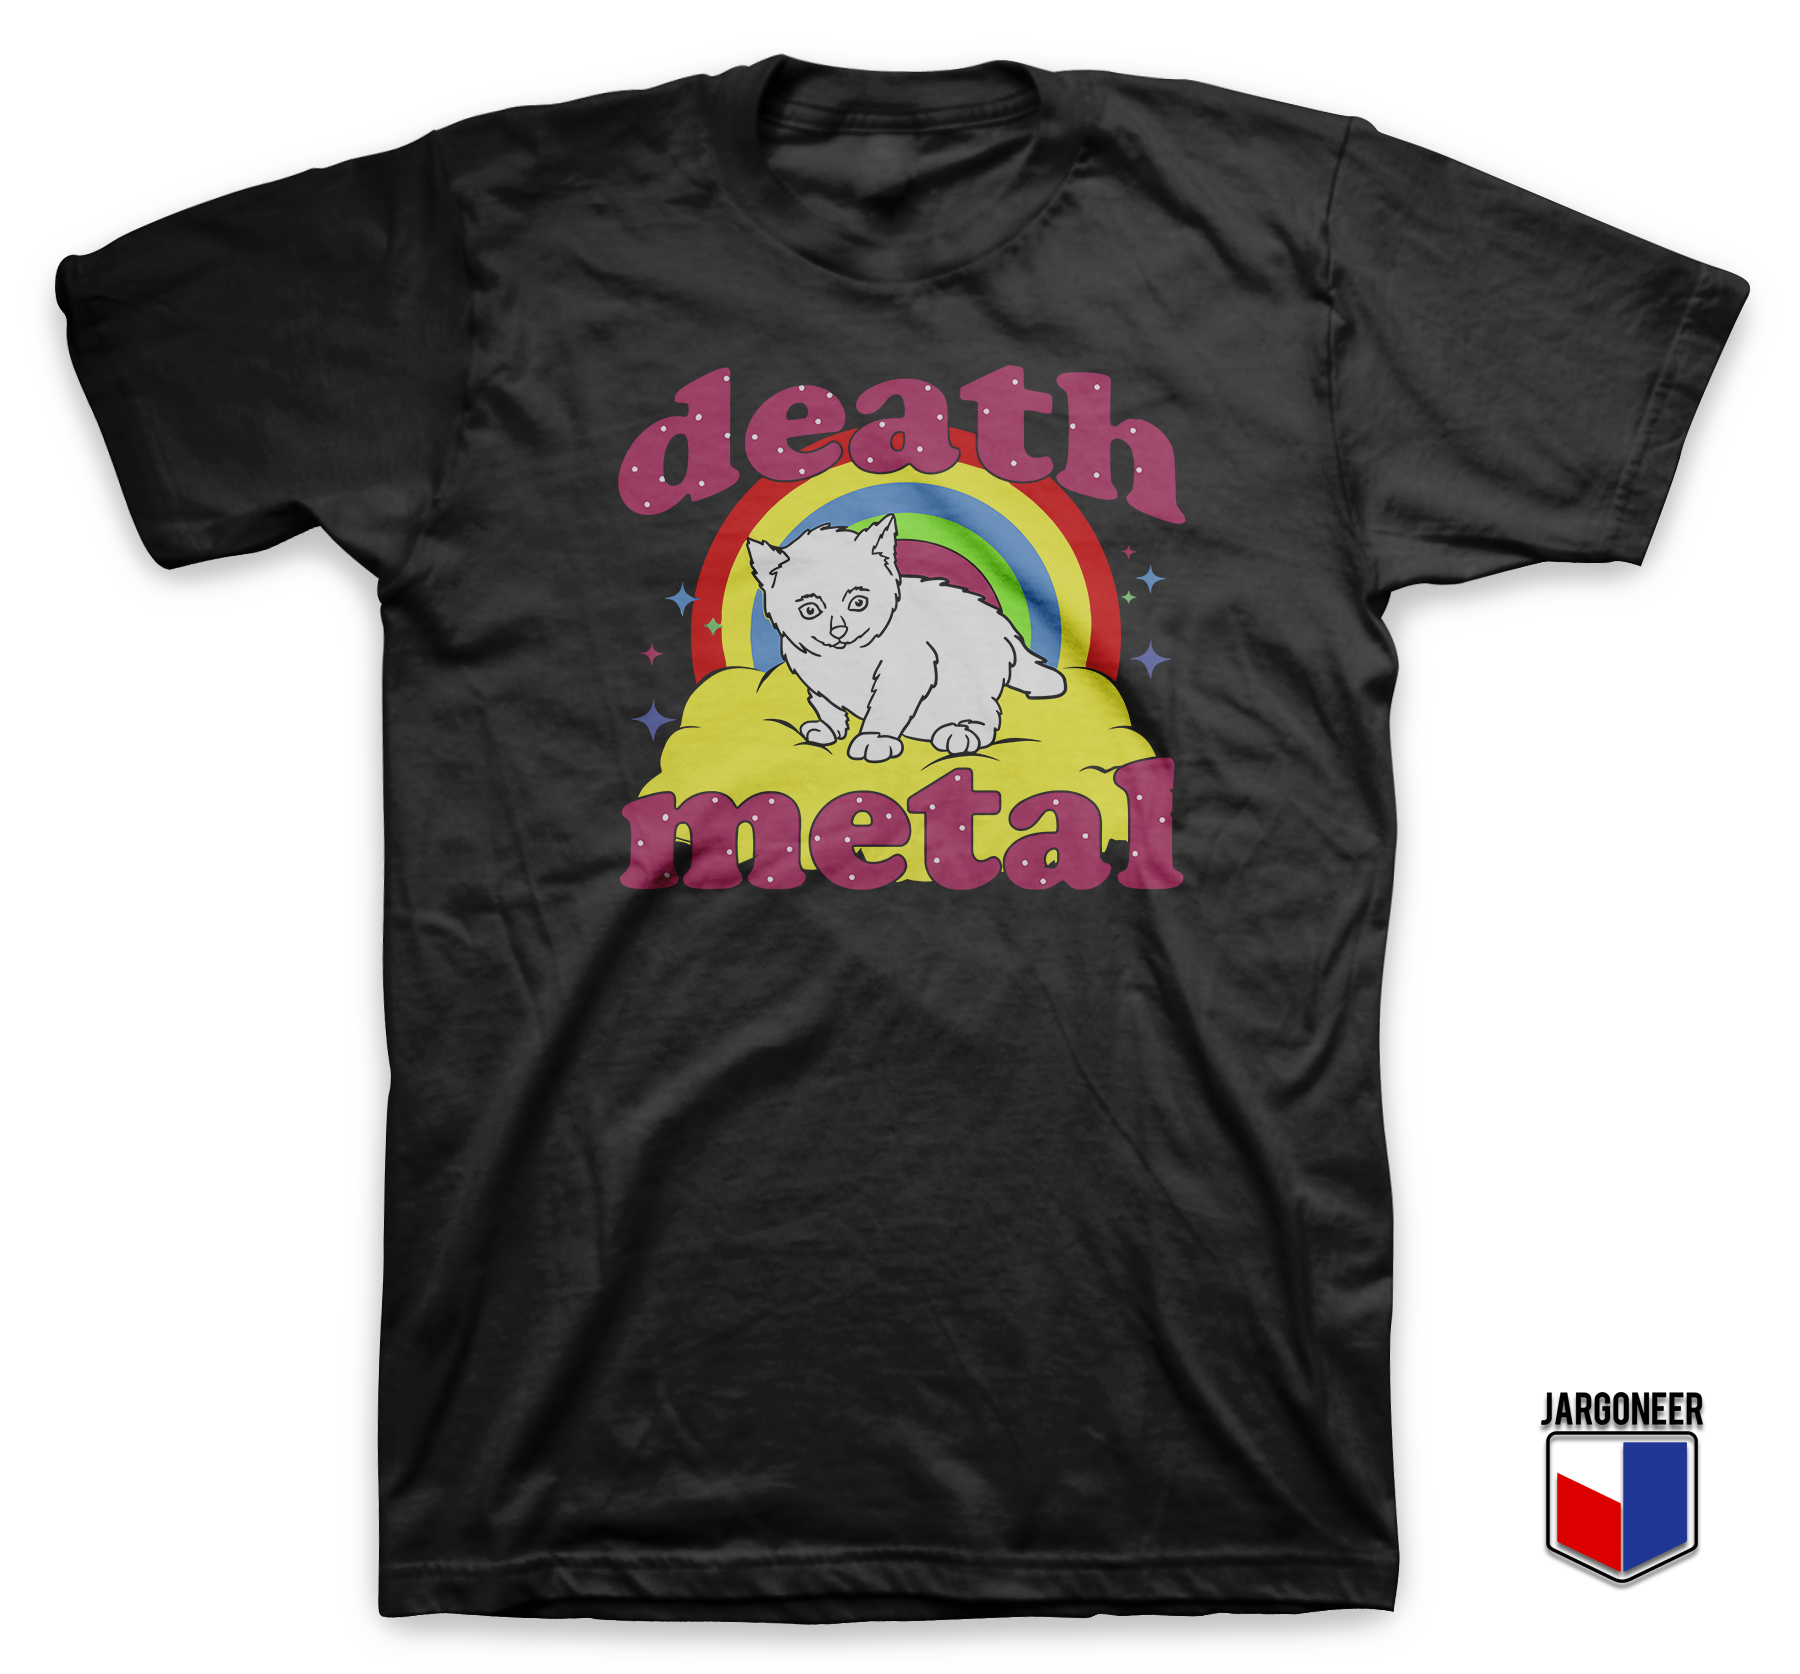 Death Metal Black T Shirt - Shop Unique Graphic Cool Shirt Designs